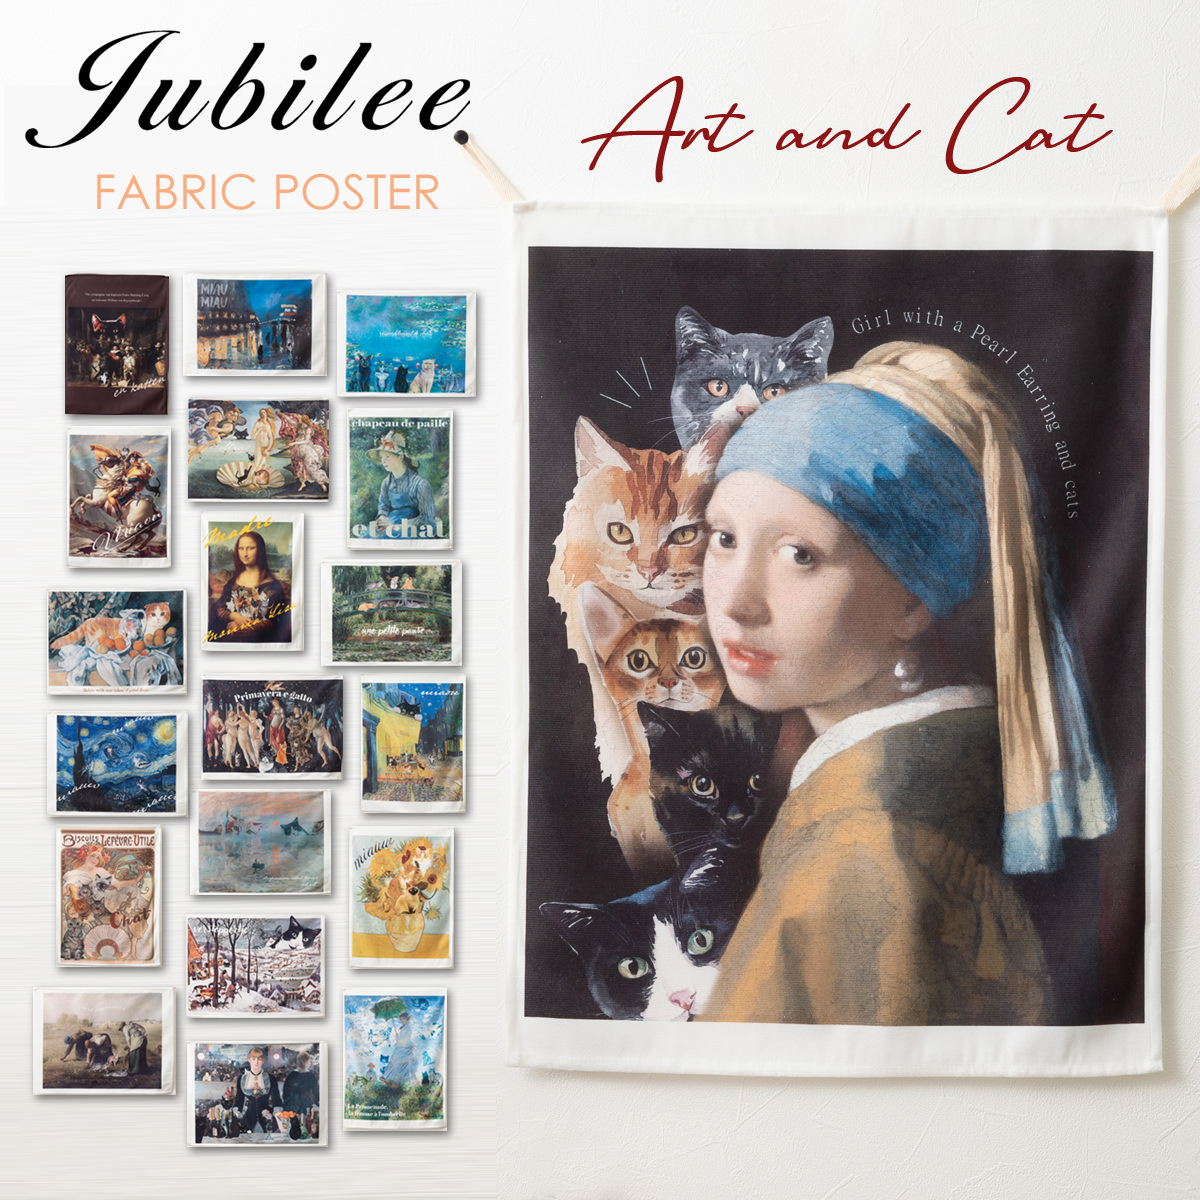 名画に紛れ込んだ猫たちに癒される、アートとパロディを融合させたファブリックポスター